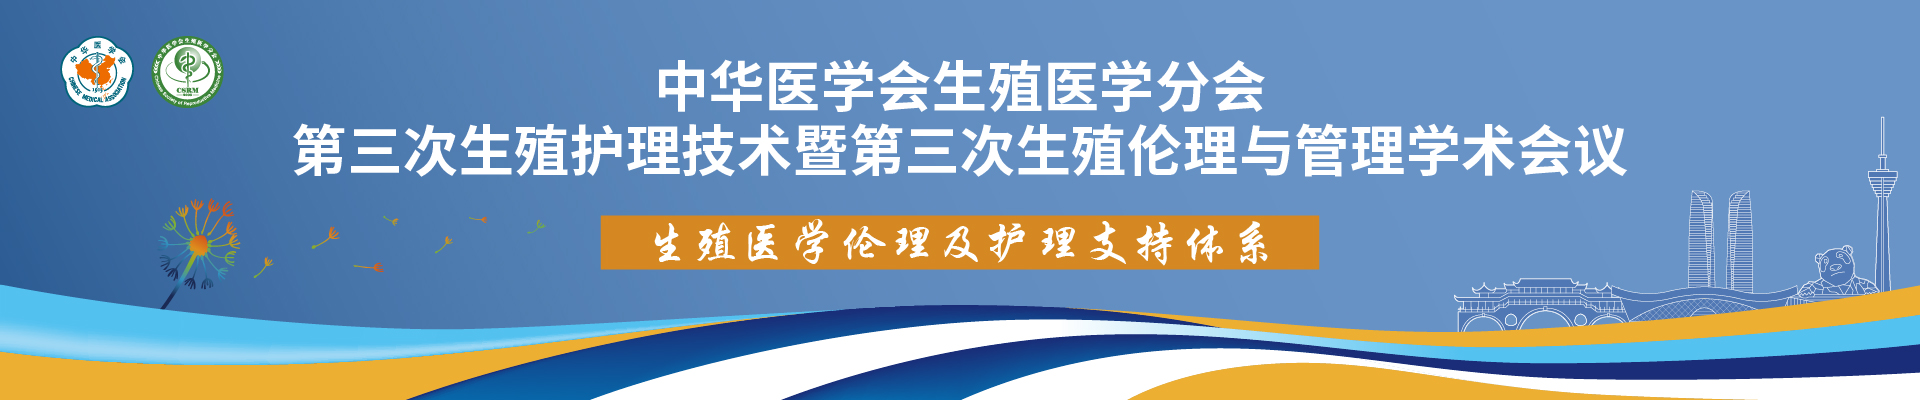 中华医学会生殖医学分会第三次生殖护理技术暨第三次生殖伦理与管理学术会议